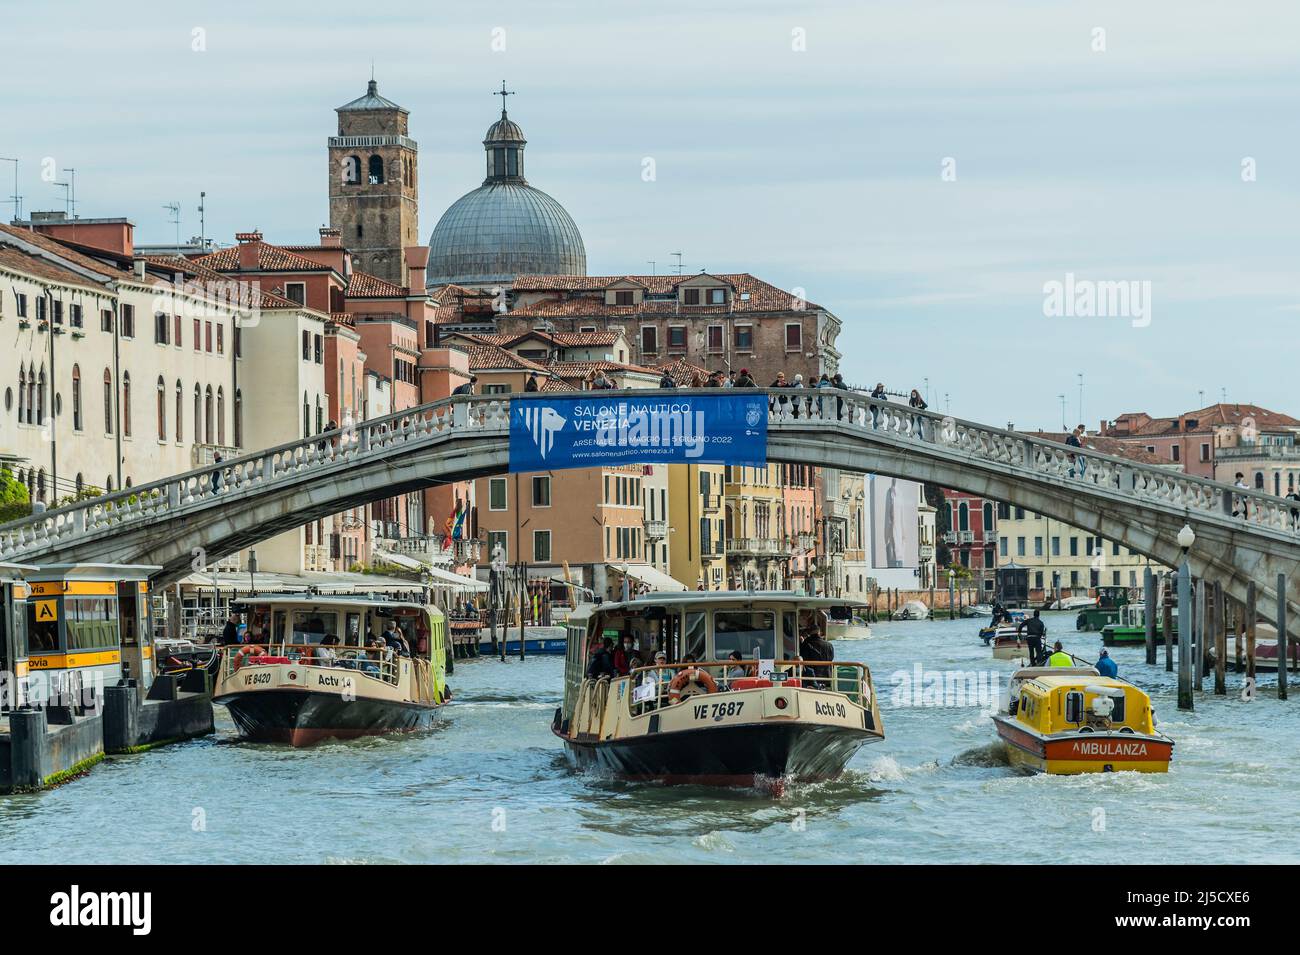 ACTV bateau-bus et une ambulance sur le Grand Canal - les canaux sont les principales artères portant toutes les formes de transport d'eau - Venise au début de la Biennale di Venezia en 2022. Banque D'Images